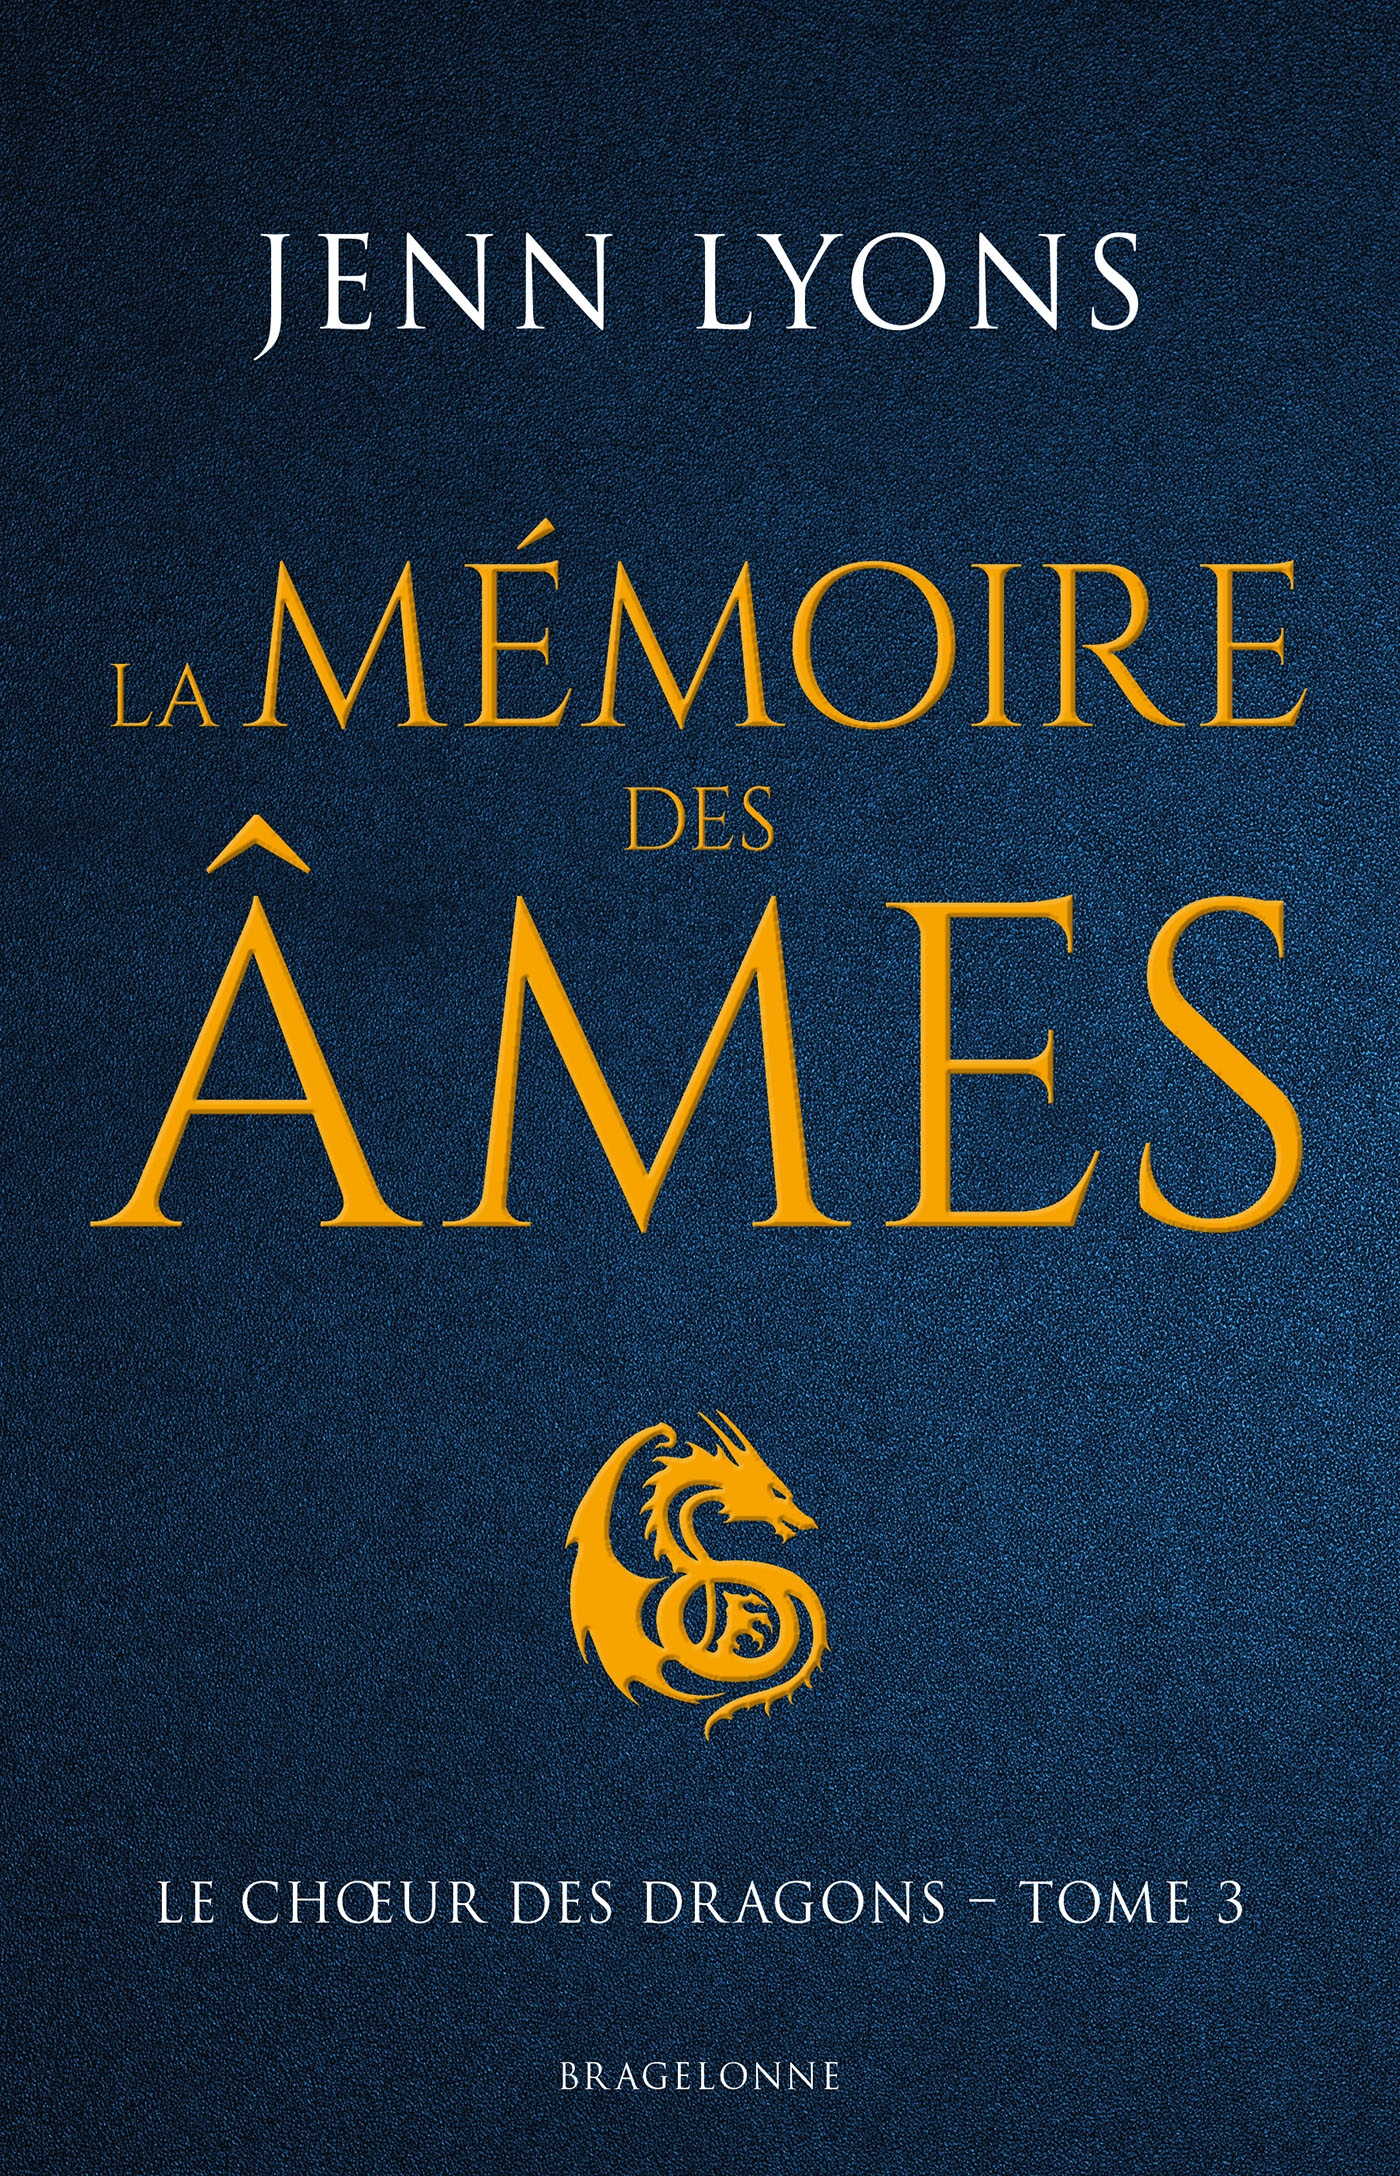 Afficher "La Mémoire des âmes"